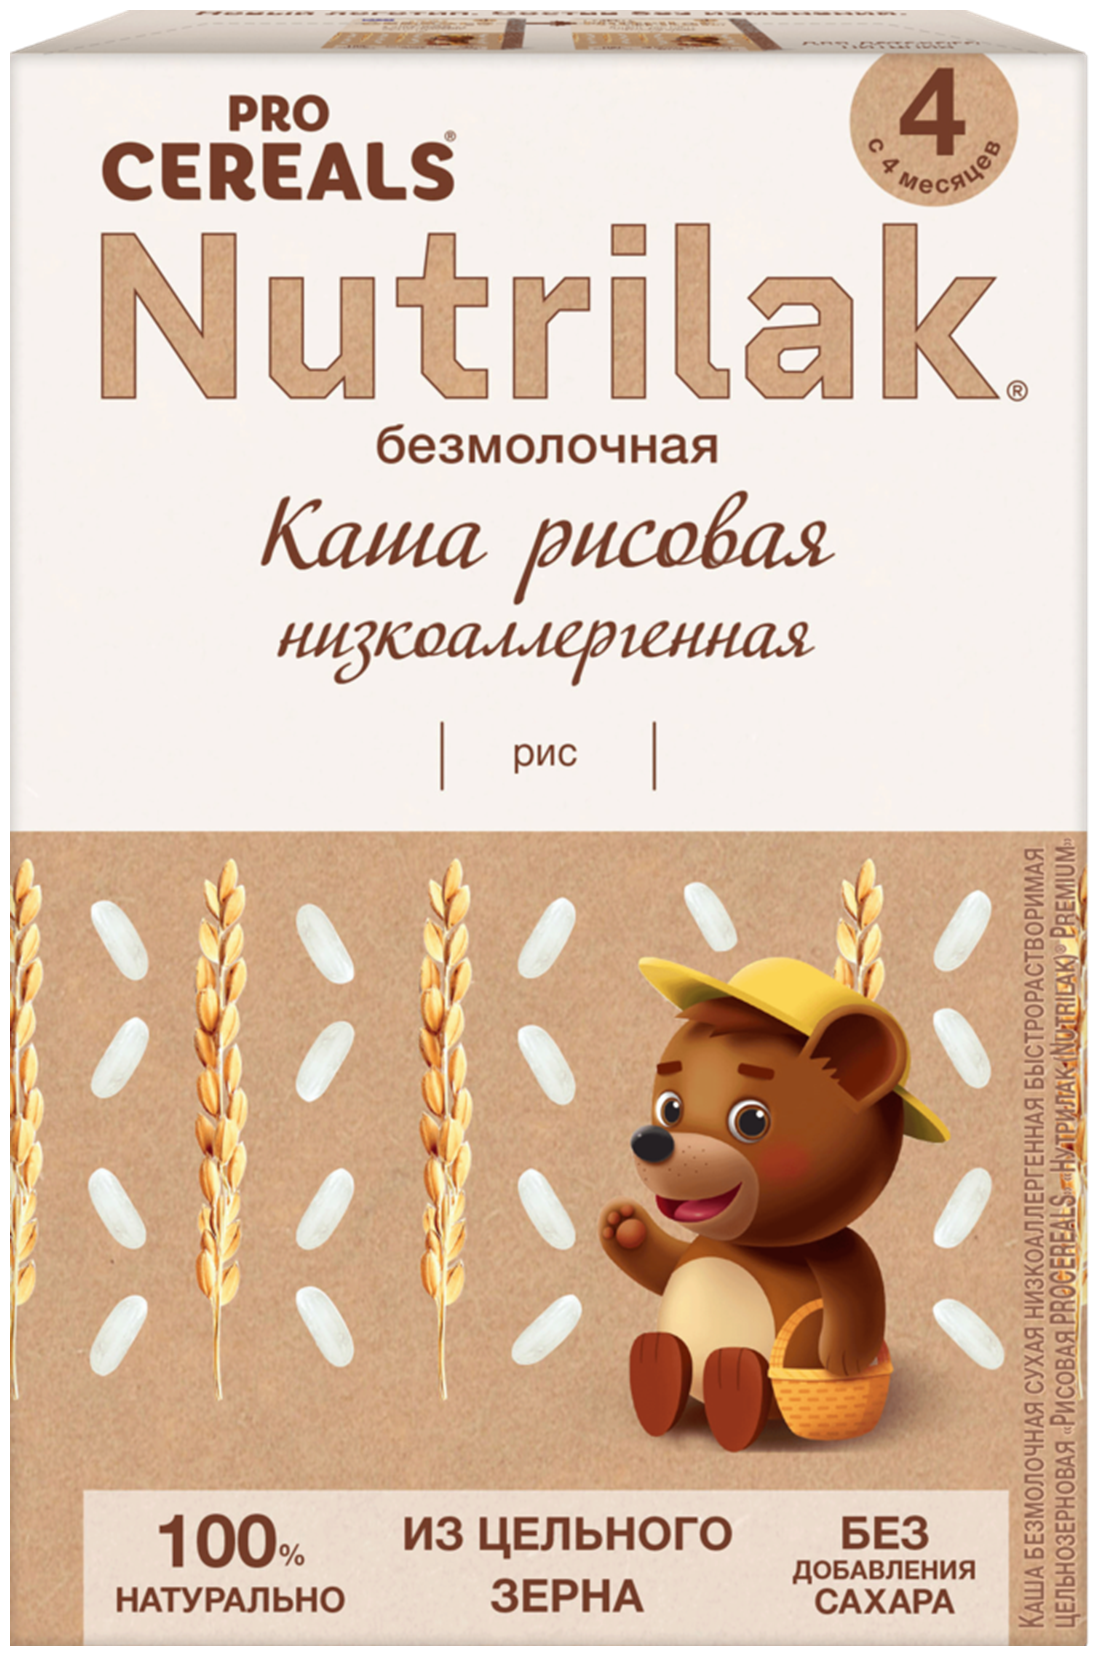 Каша рисовая Nutrilak Premium Pro Cereals цельнозерновая безмолочная, 200гр - фото №11